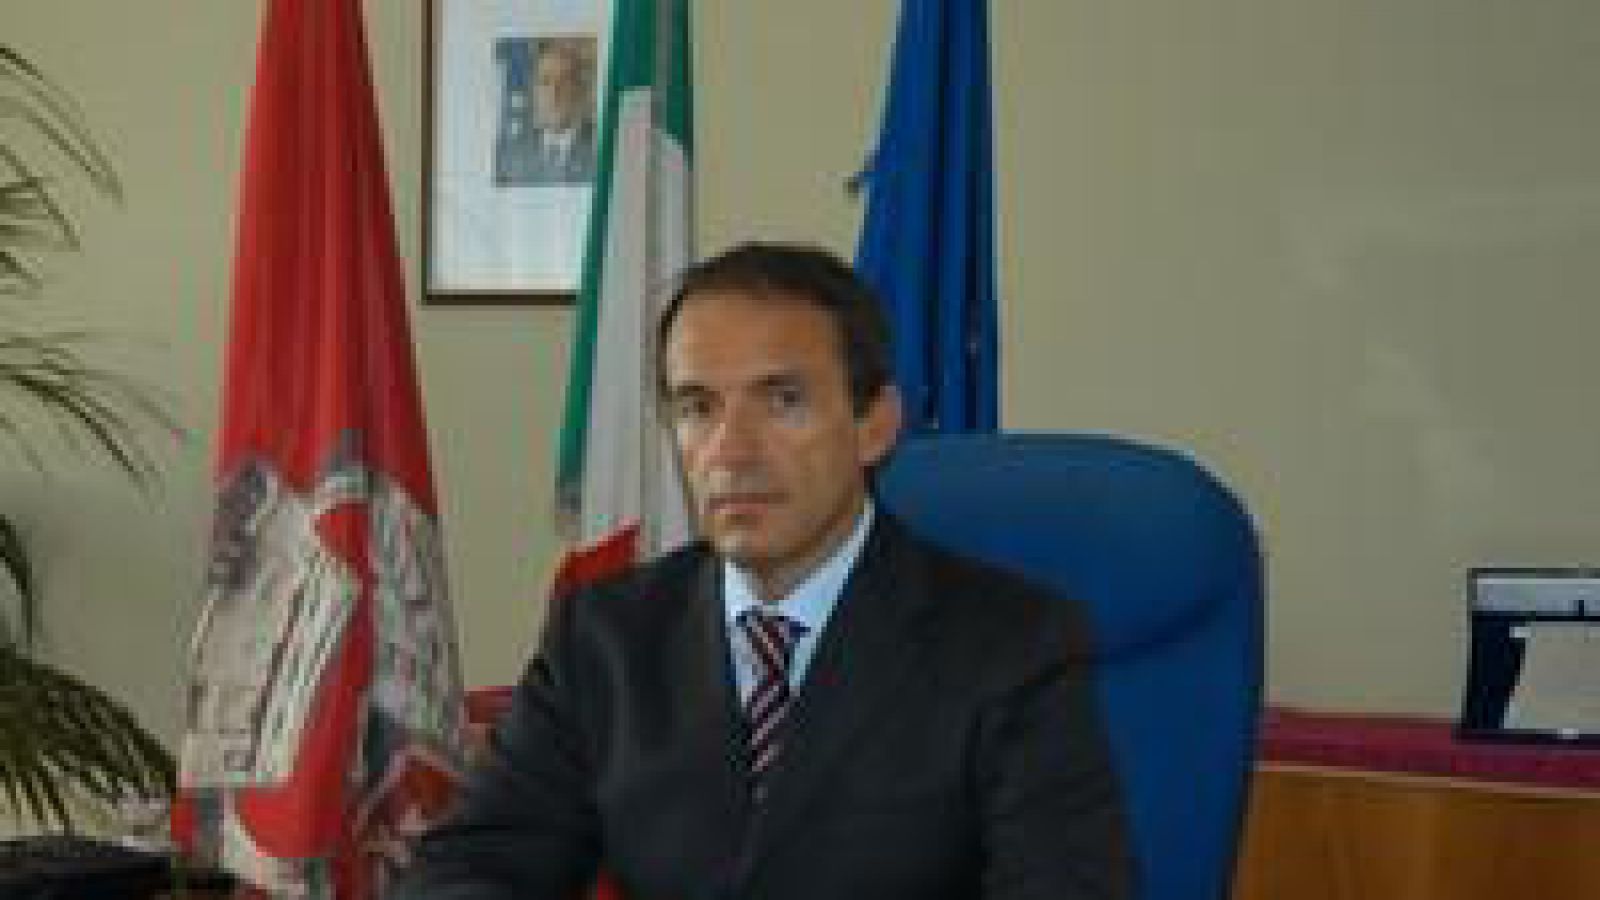 Sergio Bracco (Sergio Bracco, questore di Avellino)